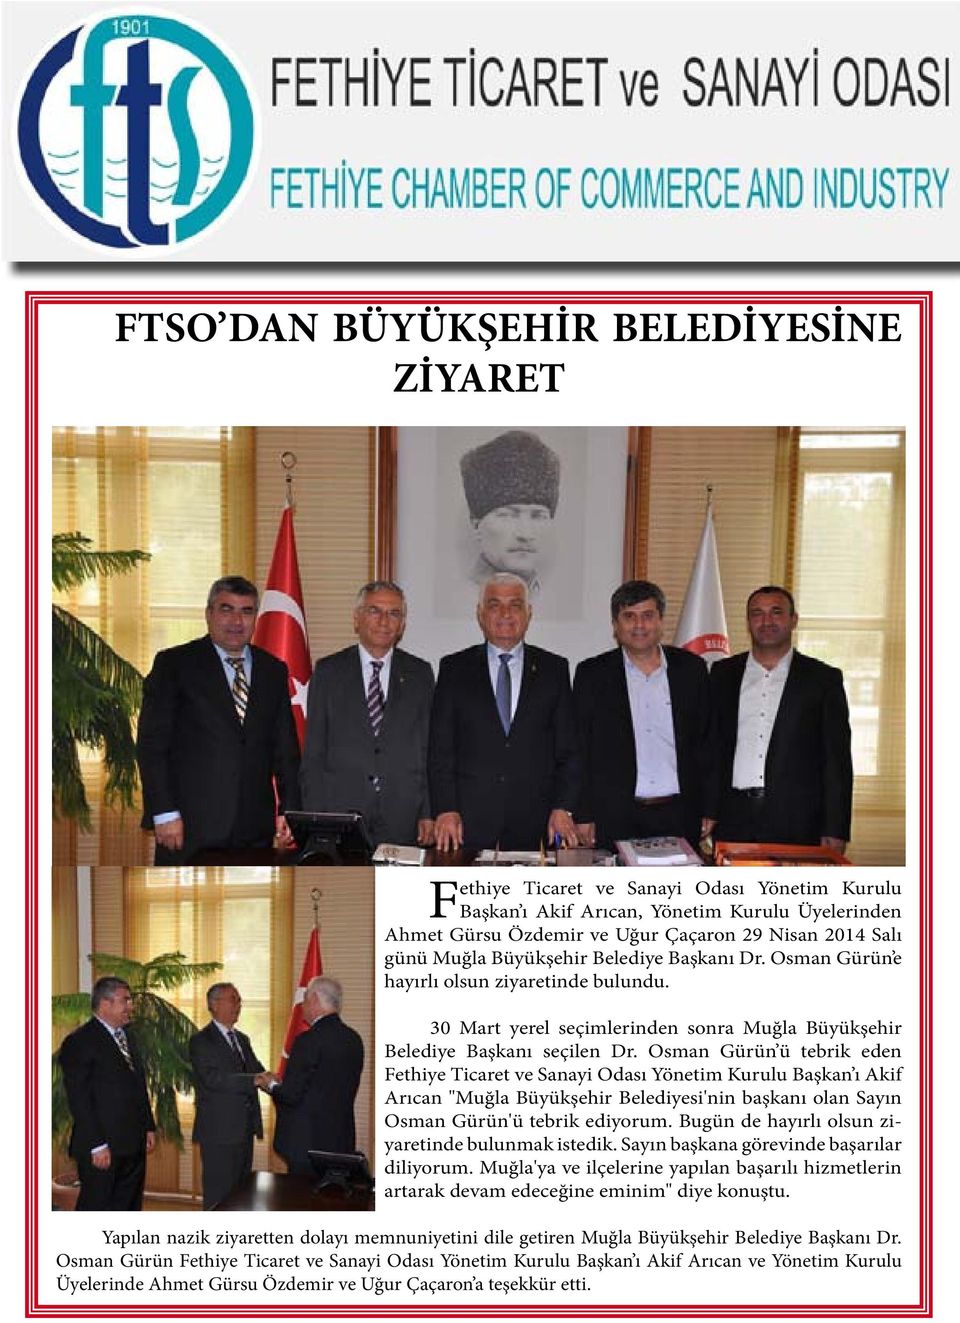 Osman Gürün ü tebrik eden Fethiye Ticaret ve Sanayi Odası Yönetim Kurulu Başkan ı Akif Arıcan "Muğla Büyükşehir Belediyesi'nin başkanı olan Sayın Osman Gürün'ü tebrik ediyorum.